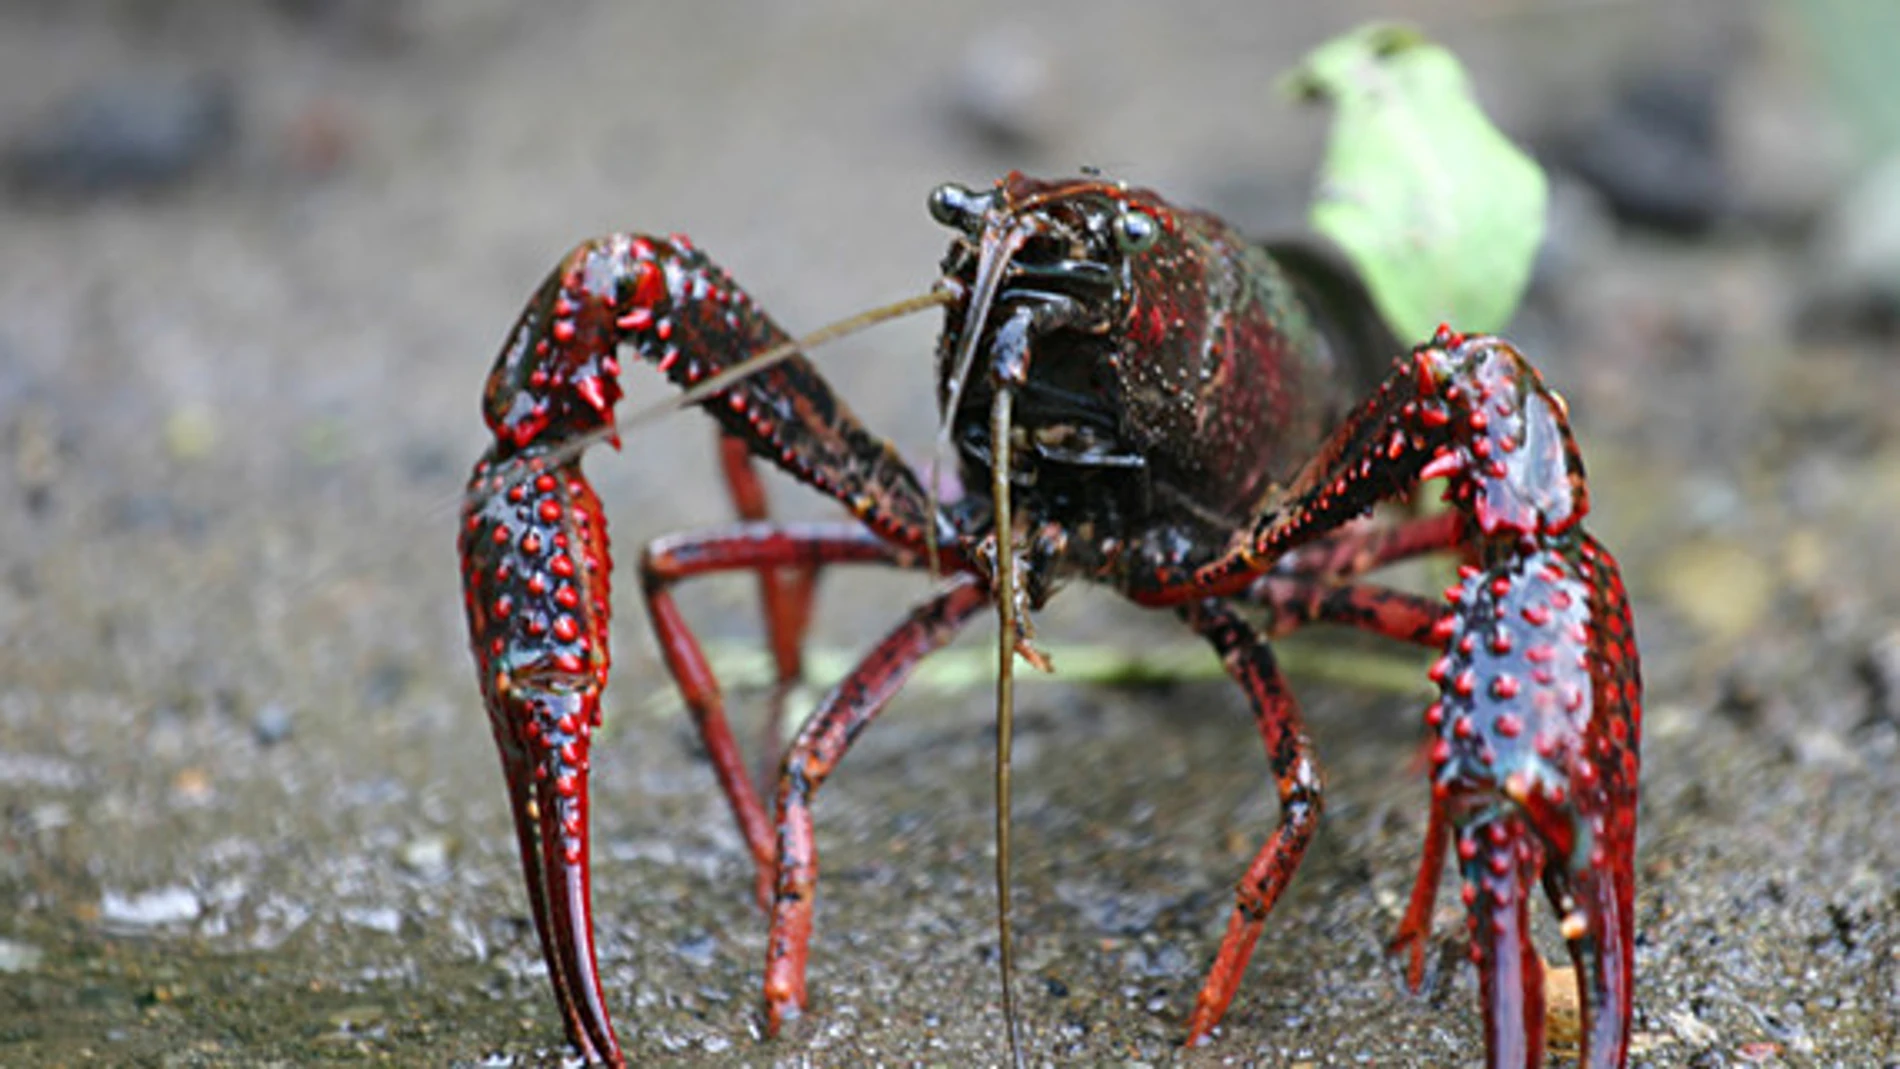 El cangrejo de río americano (Procambarus clarkii), nativo del sur de los EE UU y del noreste de México, está entre las diez especies invasoras que causan más daños ecológicos y económicos a escala mundial / MikeMurphy